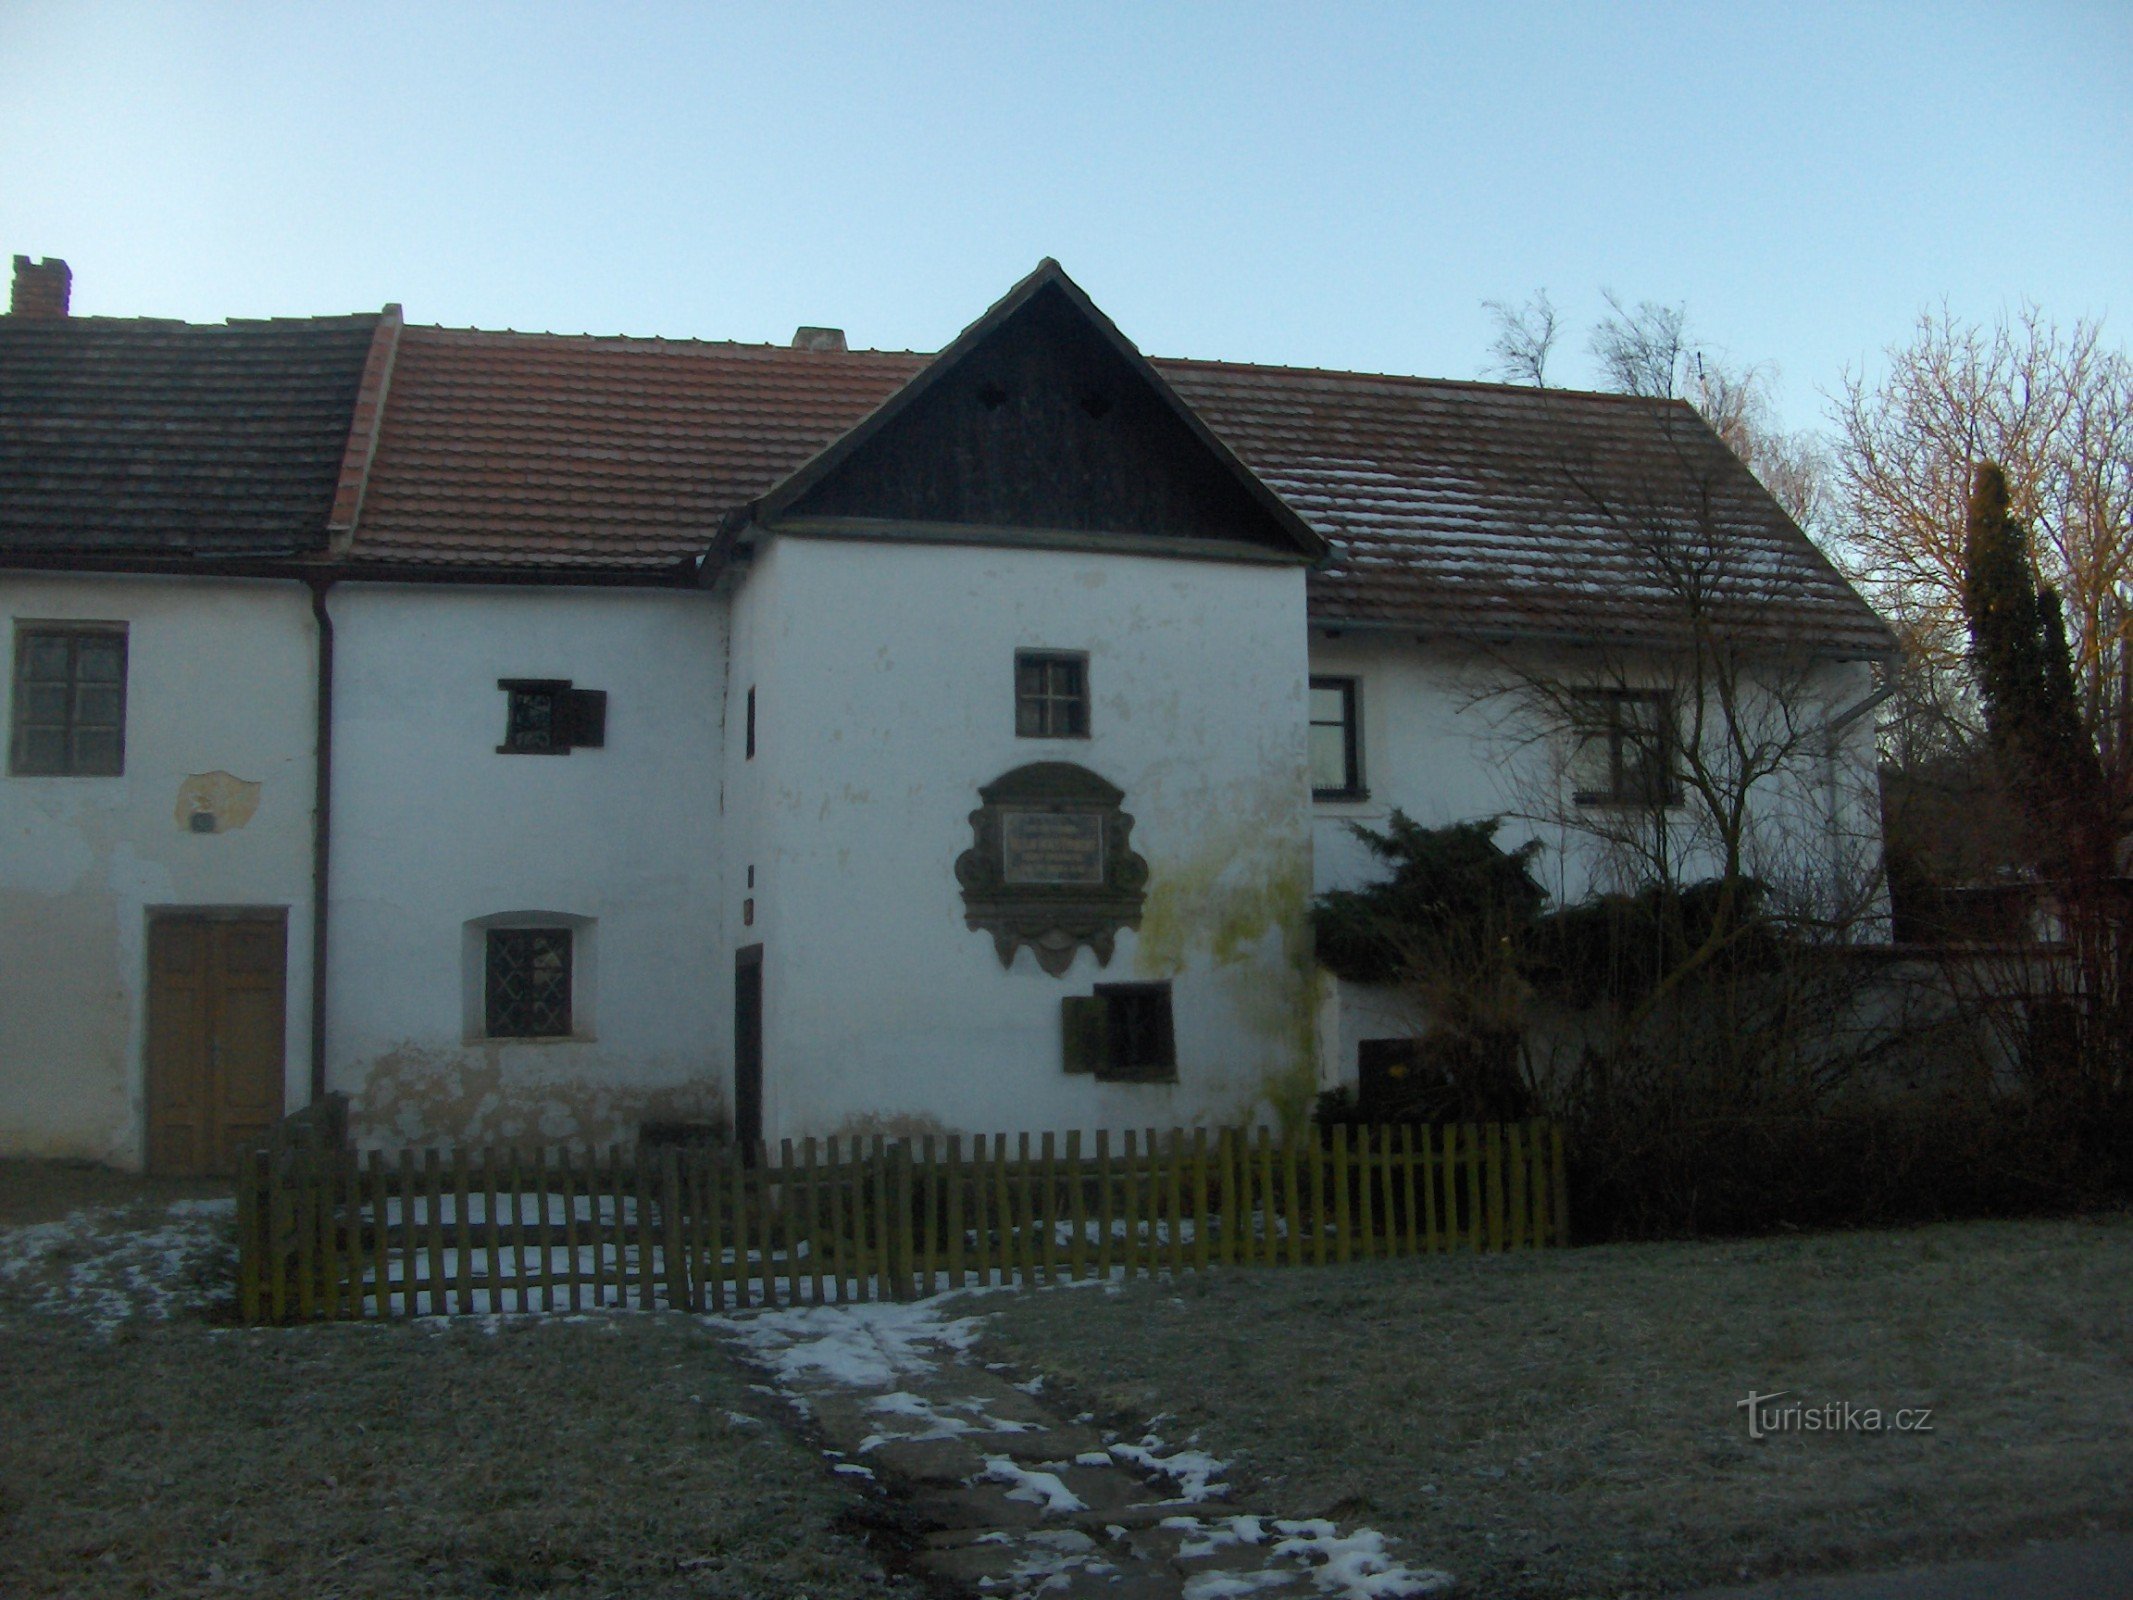 locul de naștere al lui VBTřebízský